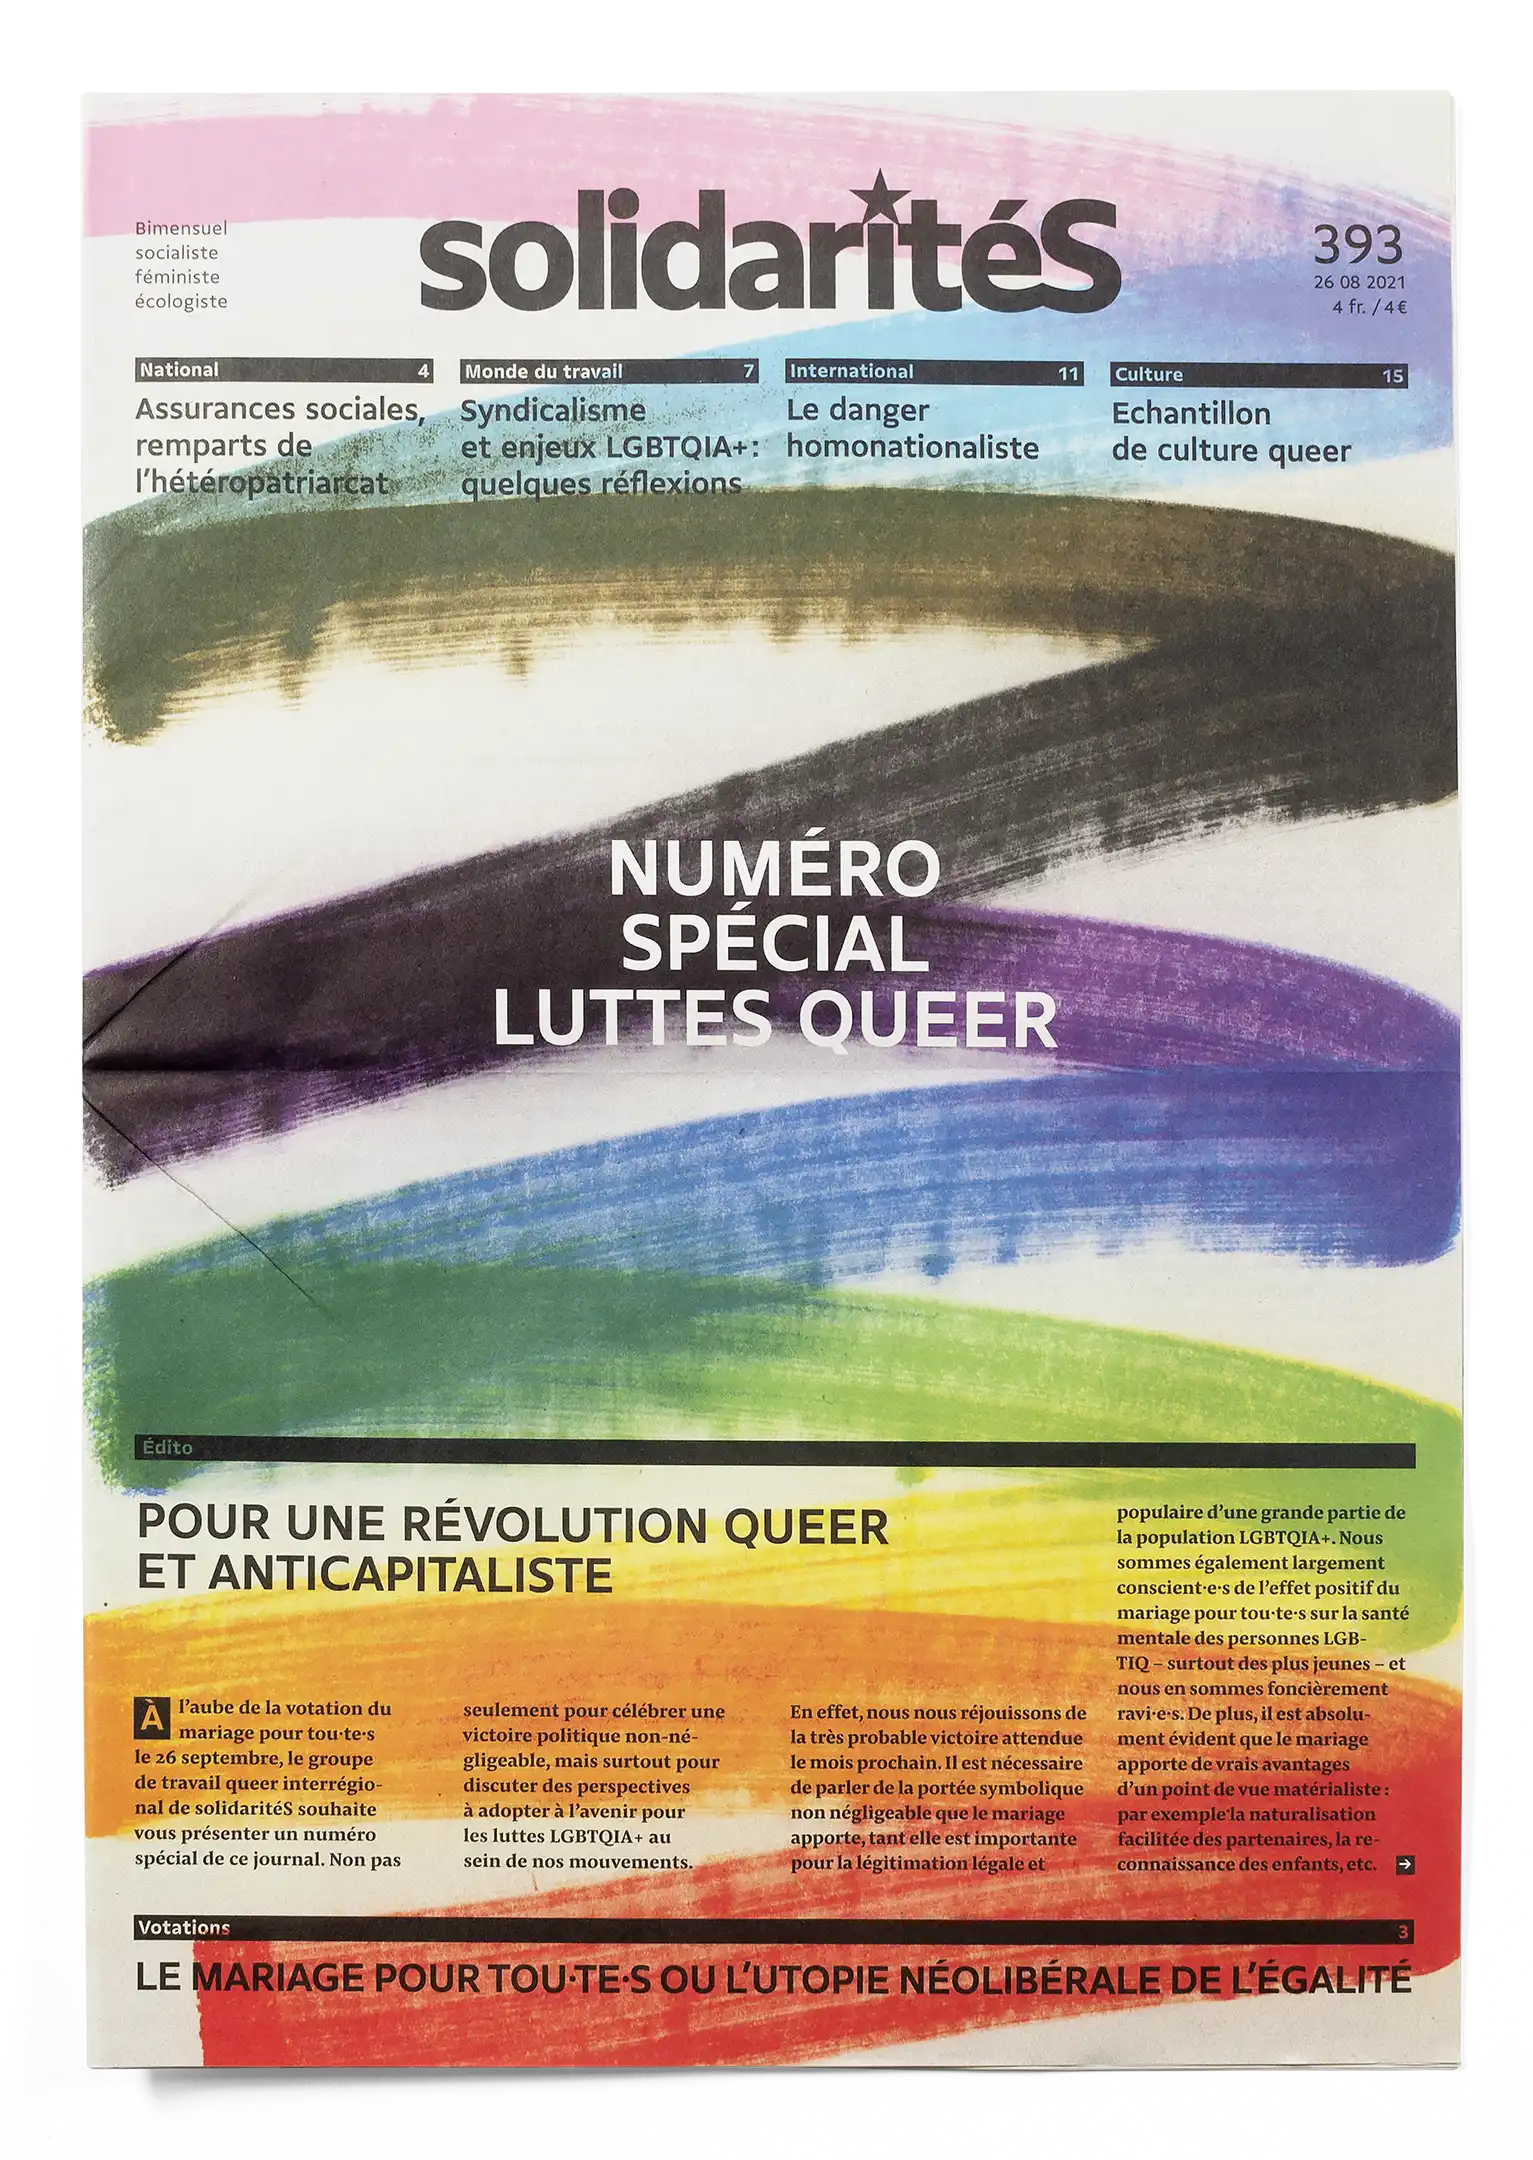 Couverture du numéro 393 du journal solidaritéS avec des traits de marker formant le drapeau LGBTIQ+